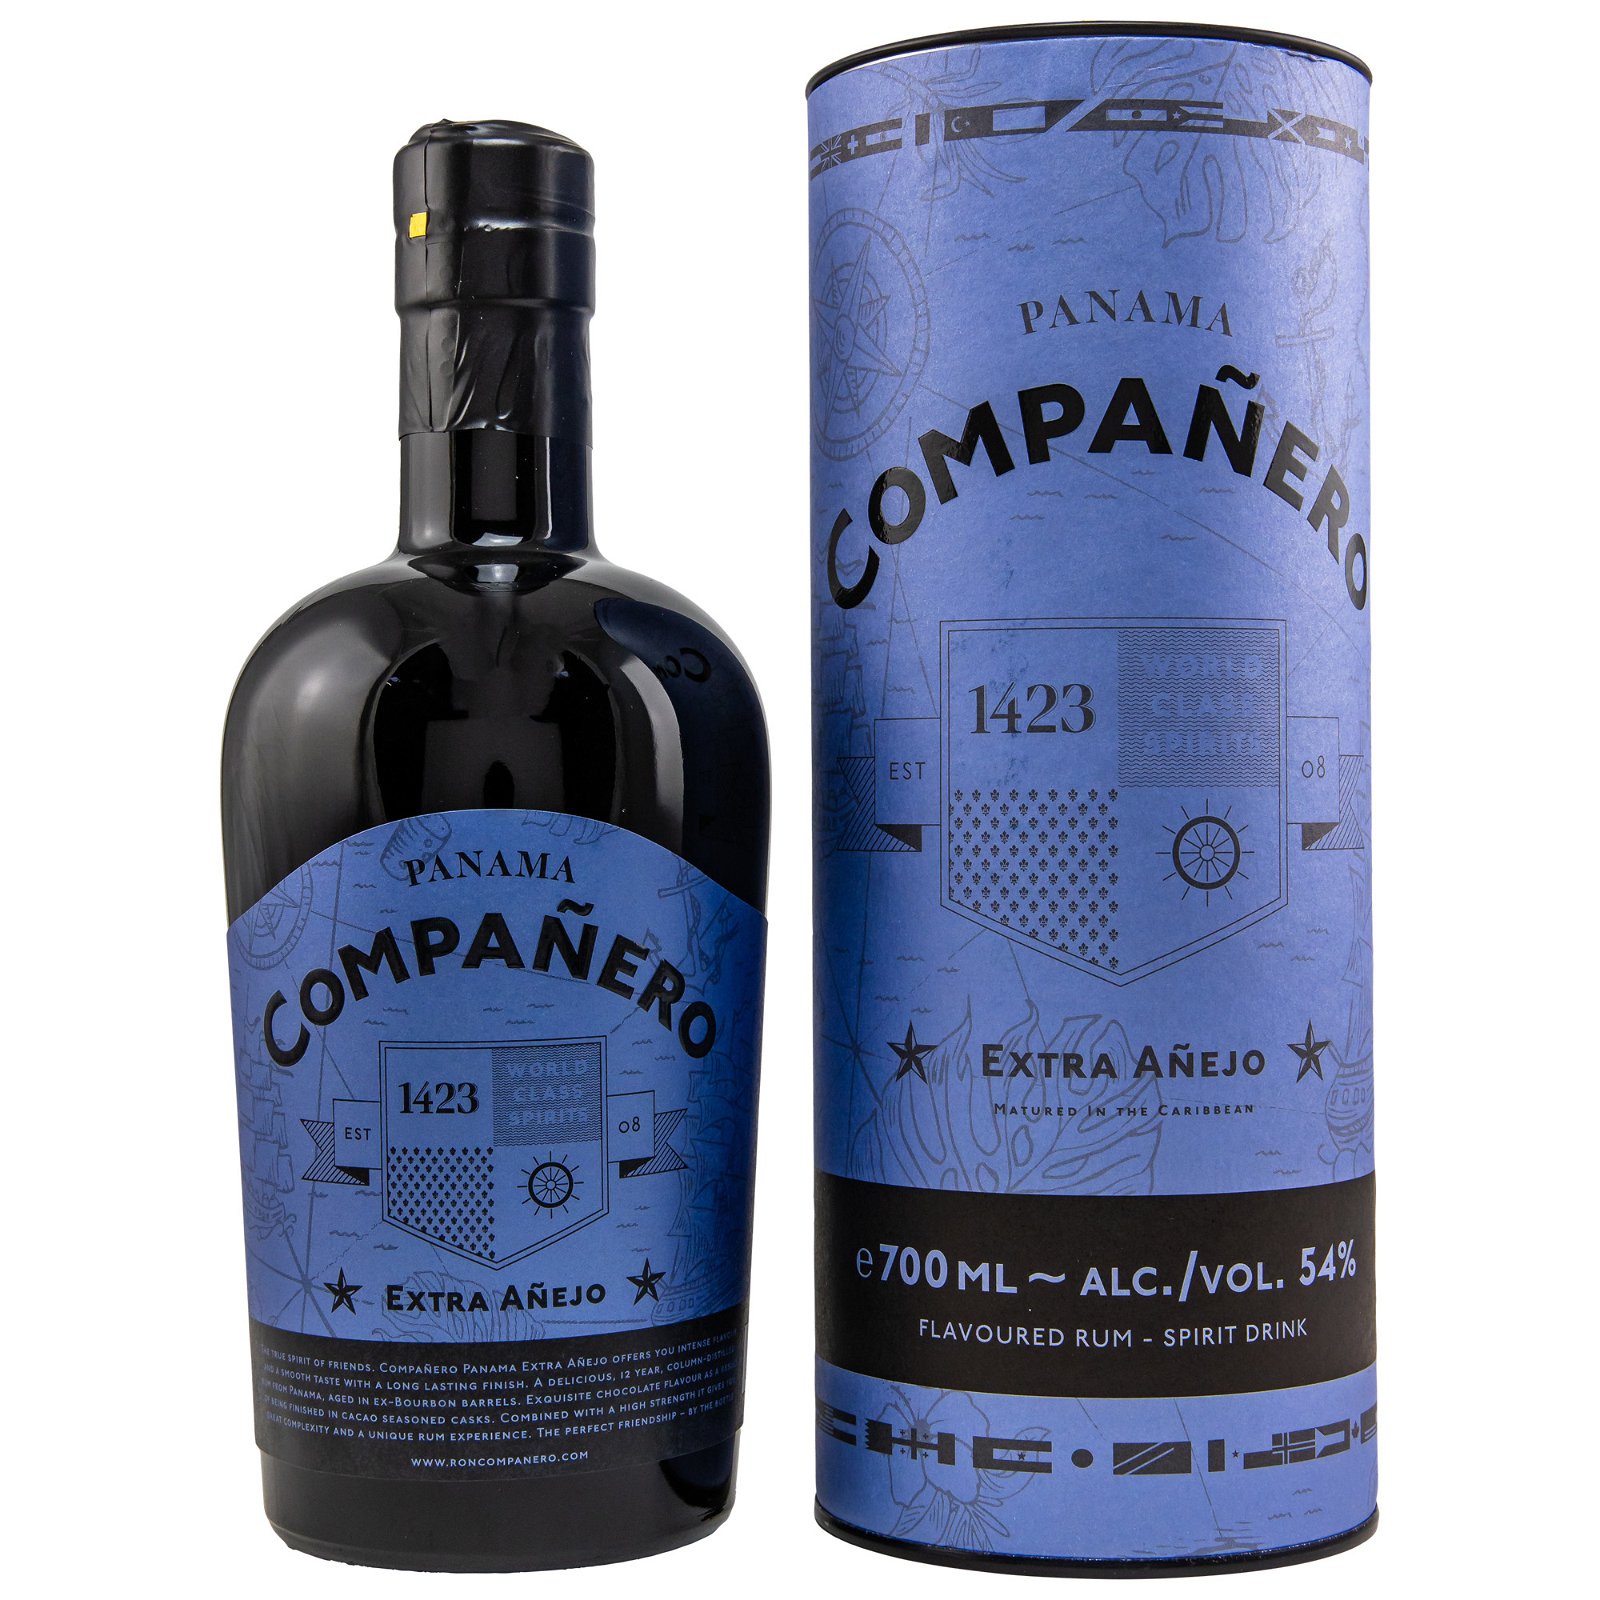 Compañero Extra Añejo Panama Rum